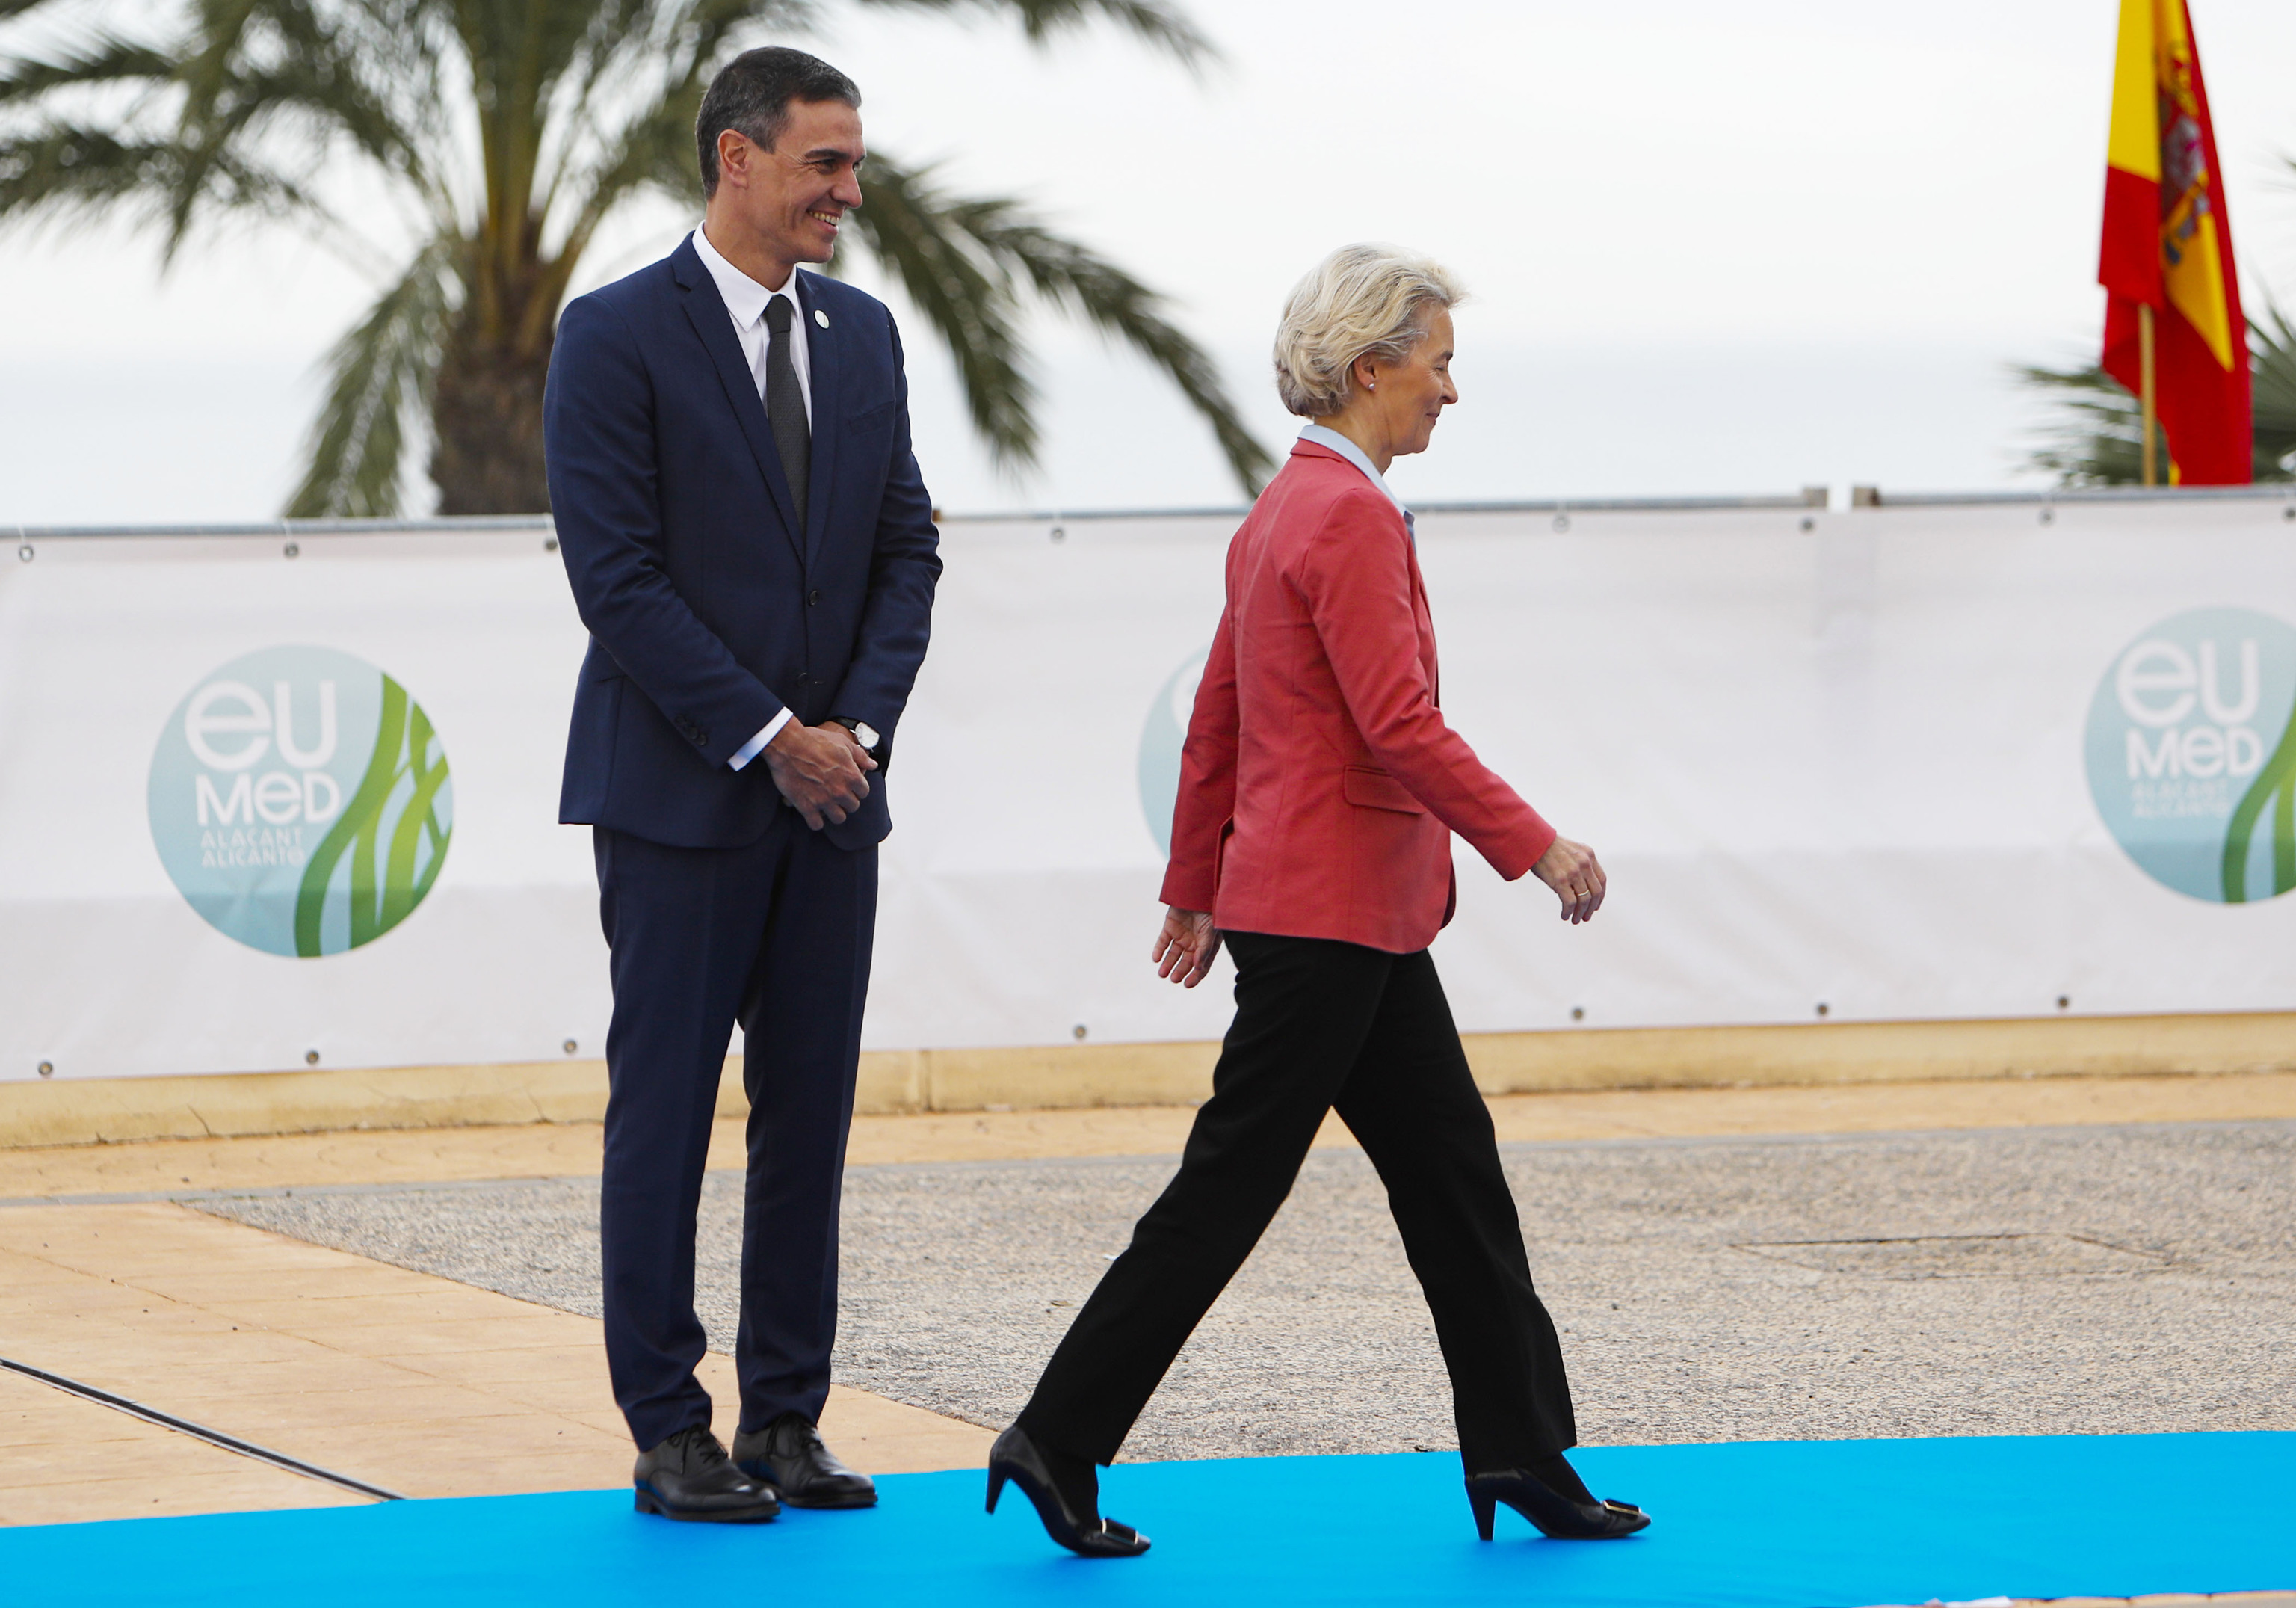 La presidenta de la Comisión Europea, Ursula von der Leyen, se marcha tras saludar a Pedro Sánchez en la Cumbre Euromediterránea.